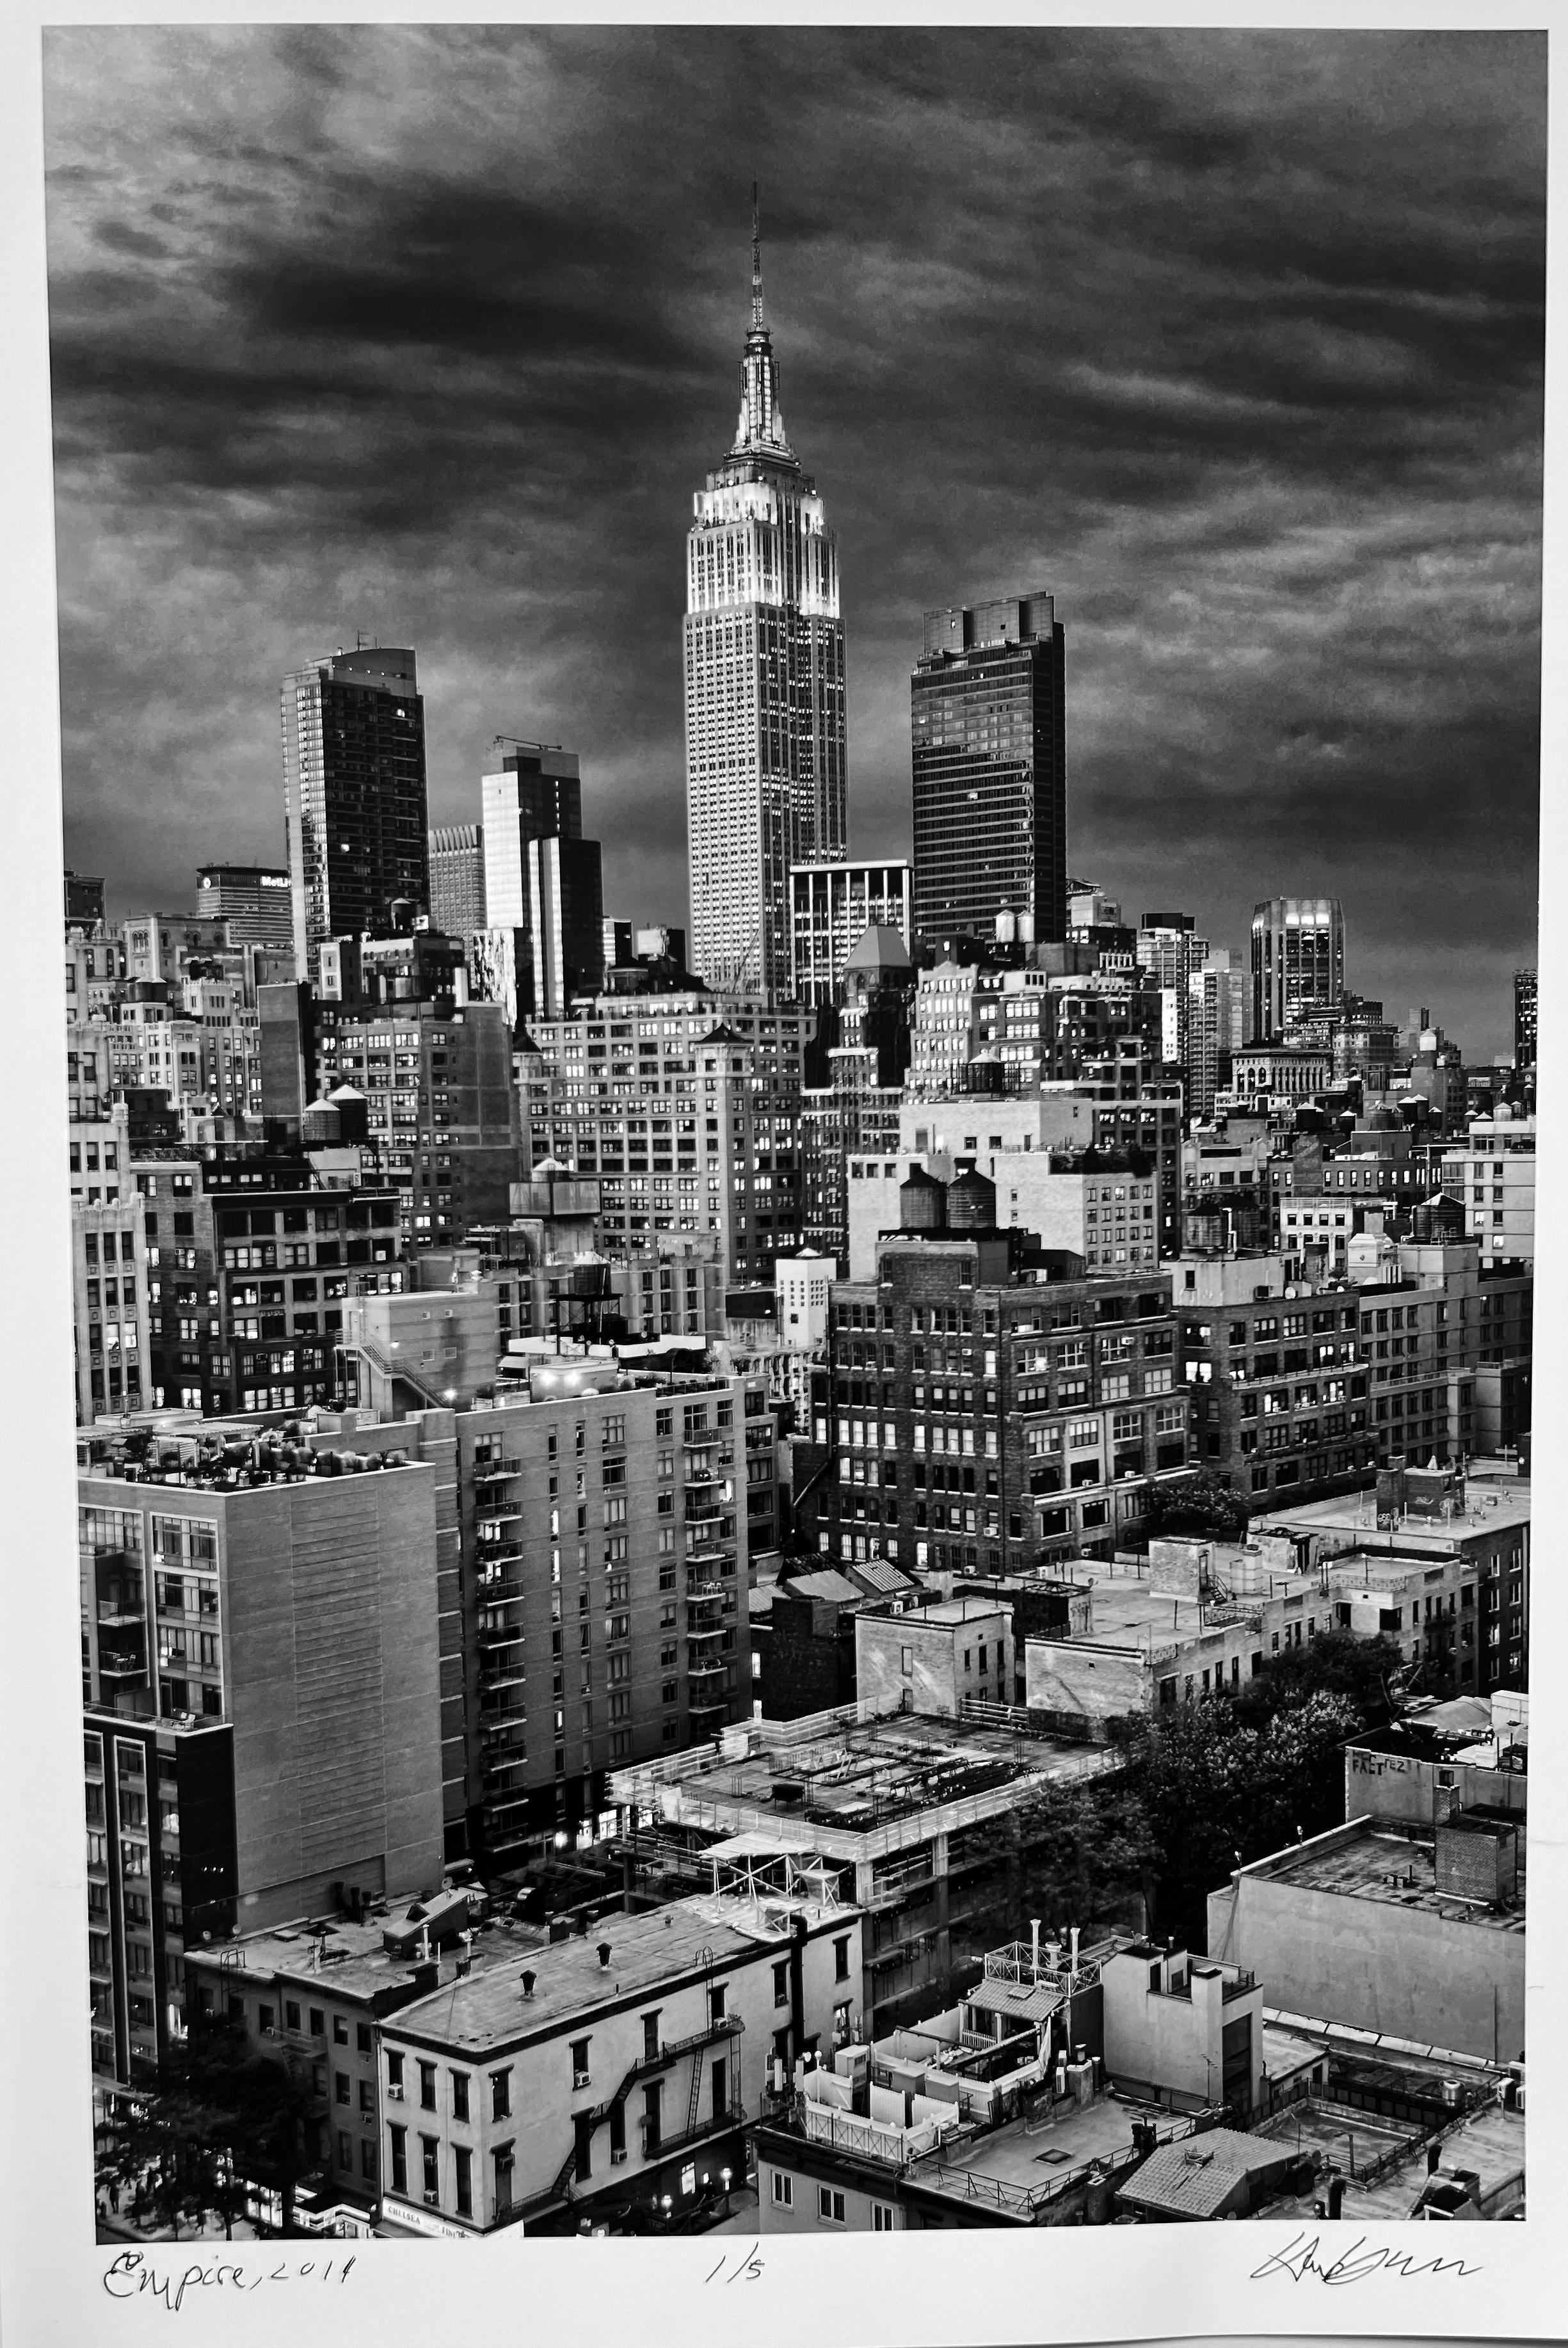 Empire, New York City, Dokumentar-Landschaftsfotografie in Schwarz-Weiß – Photograph von Hank Gans